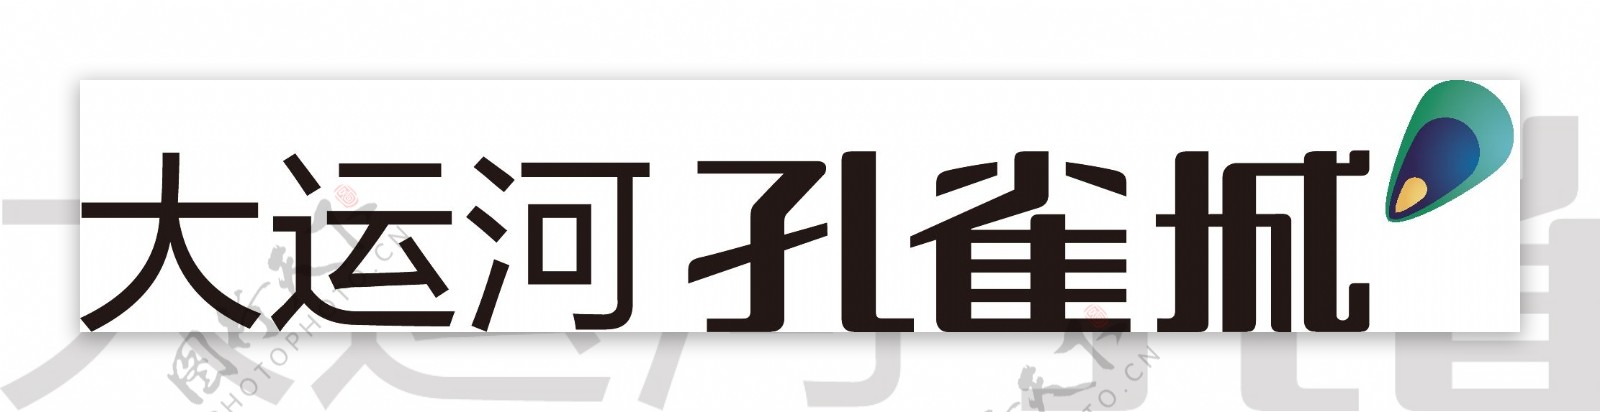 孔雀城logo